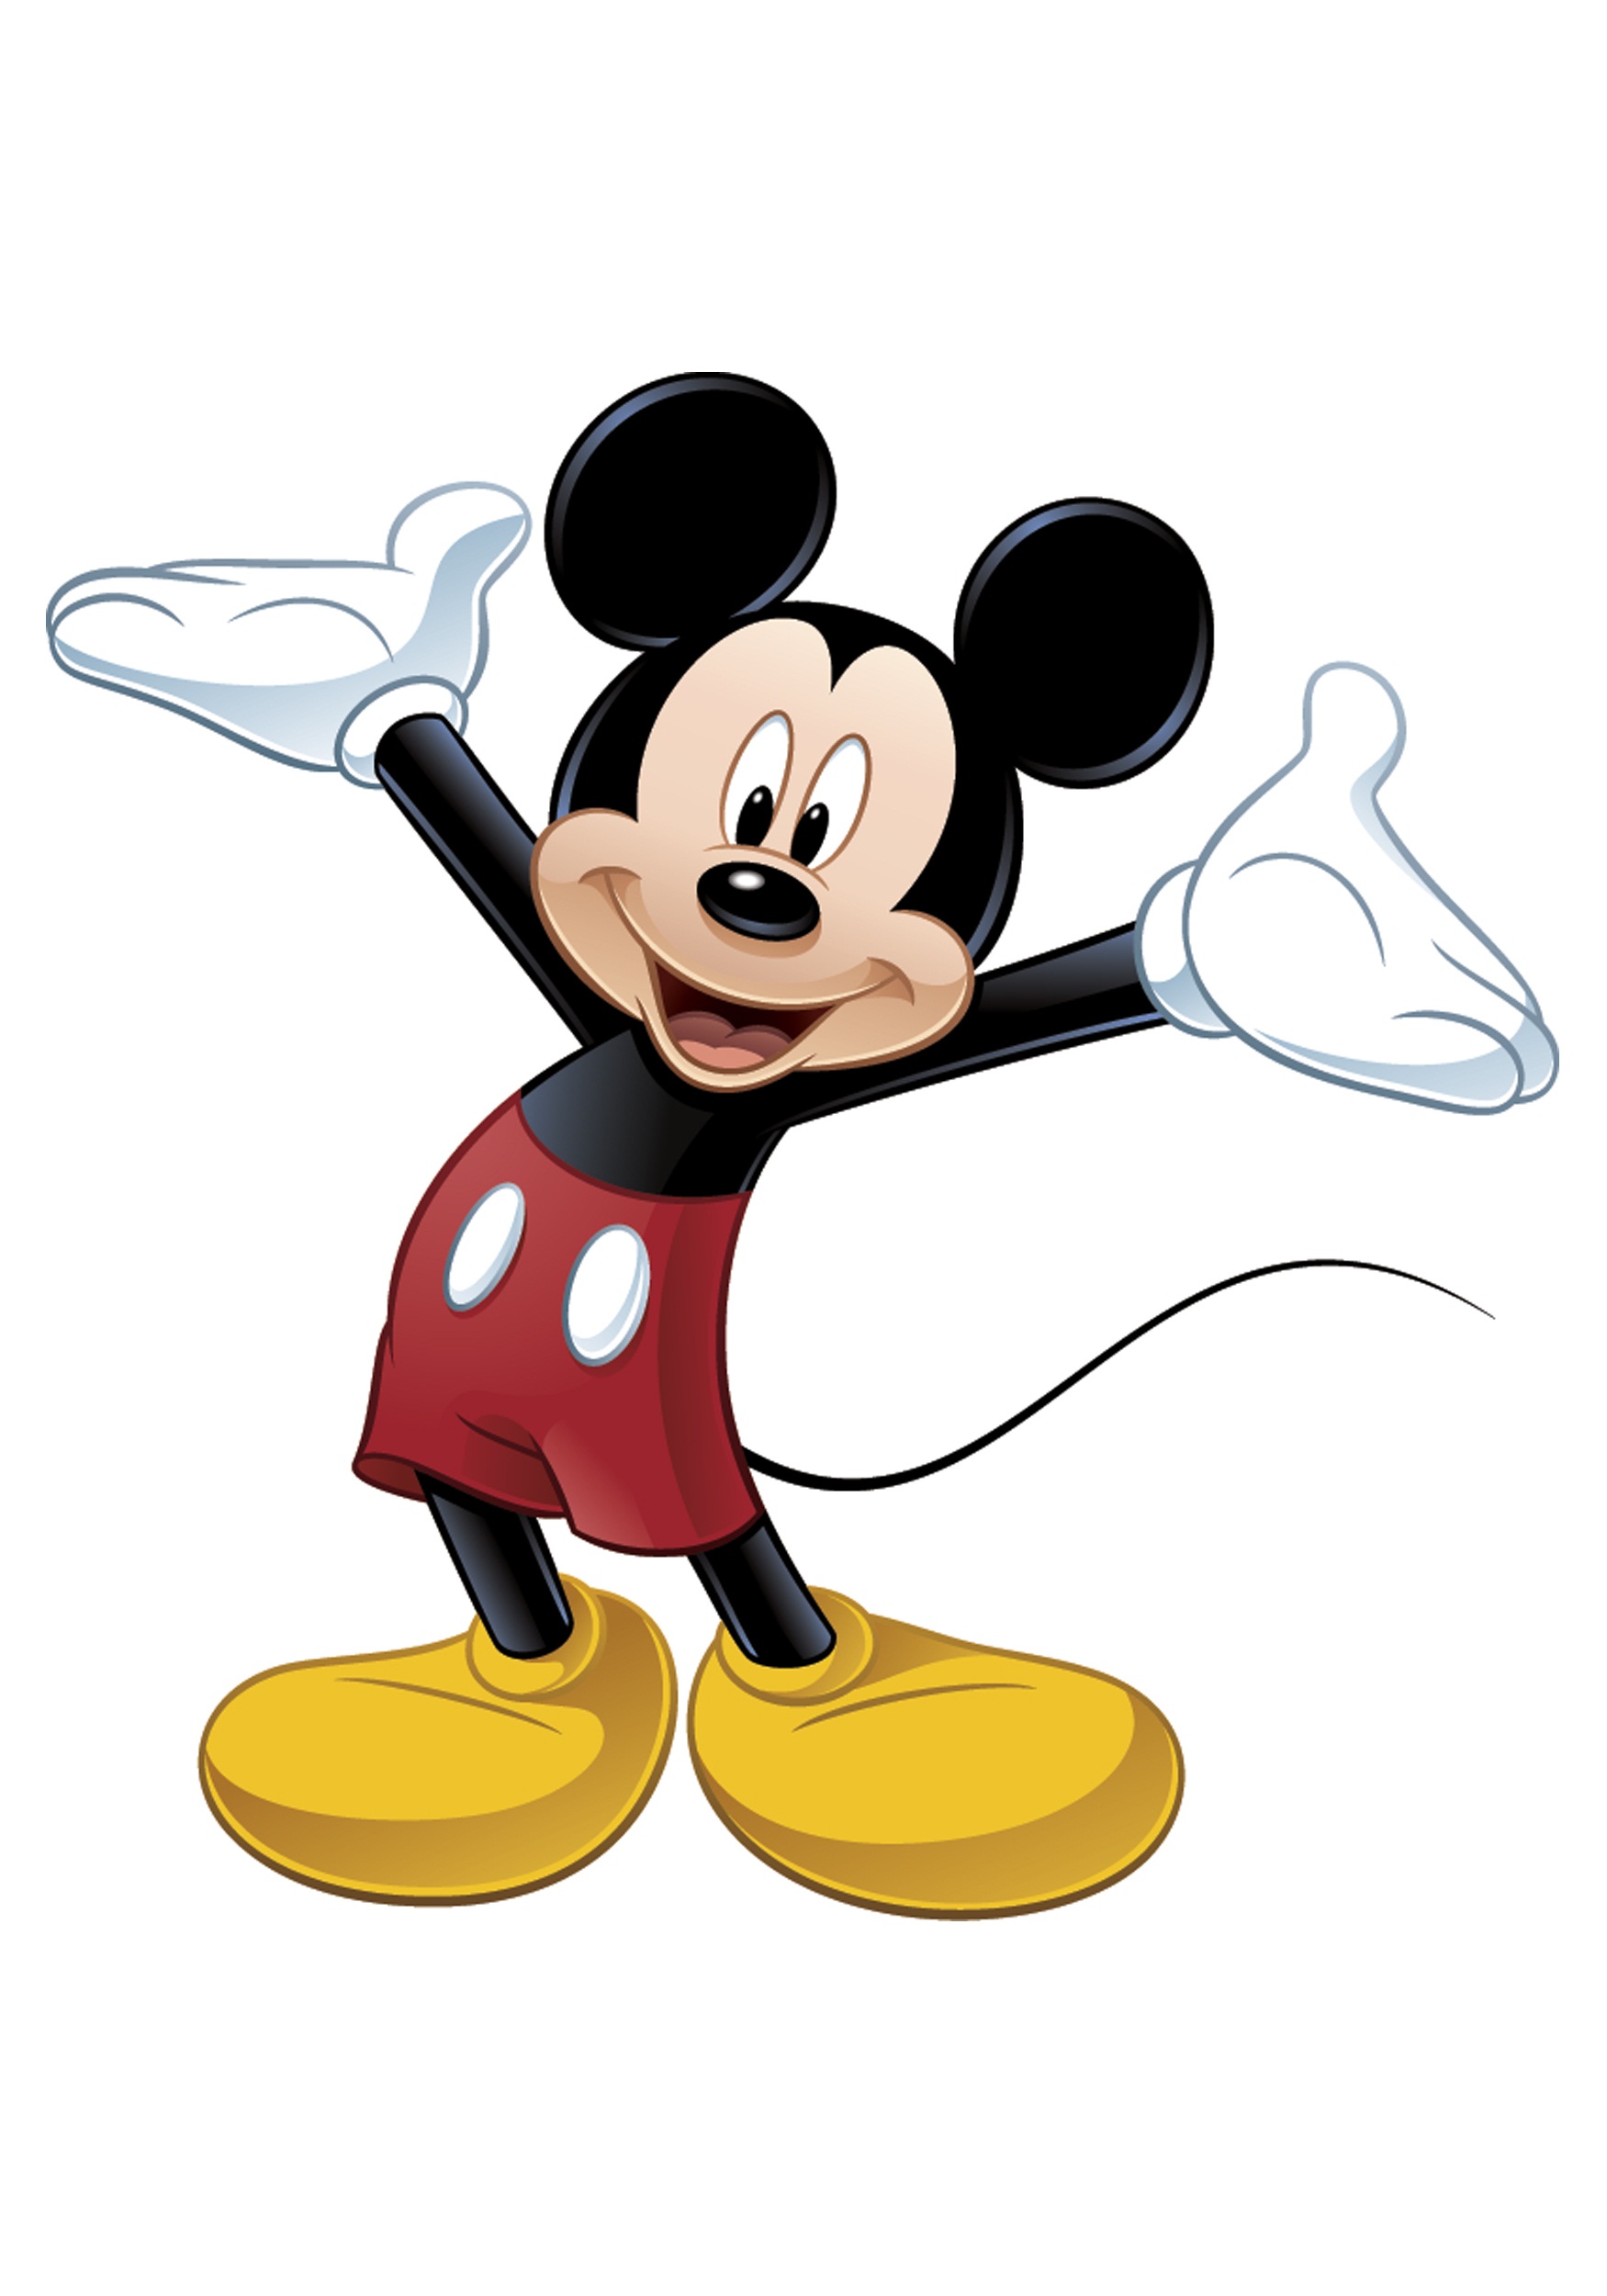 mickey mouse fond d'écran télécharger,dessin animé,dessin animé,clipart,illustration,animation